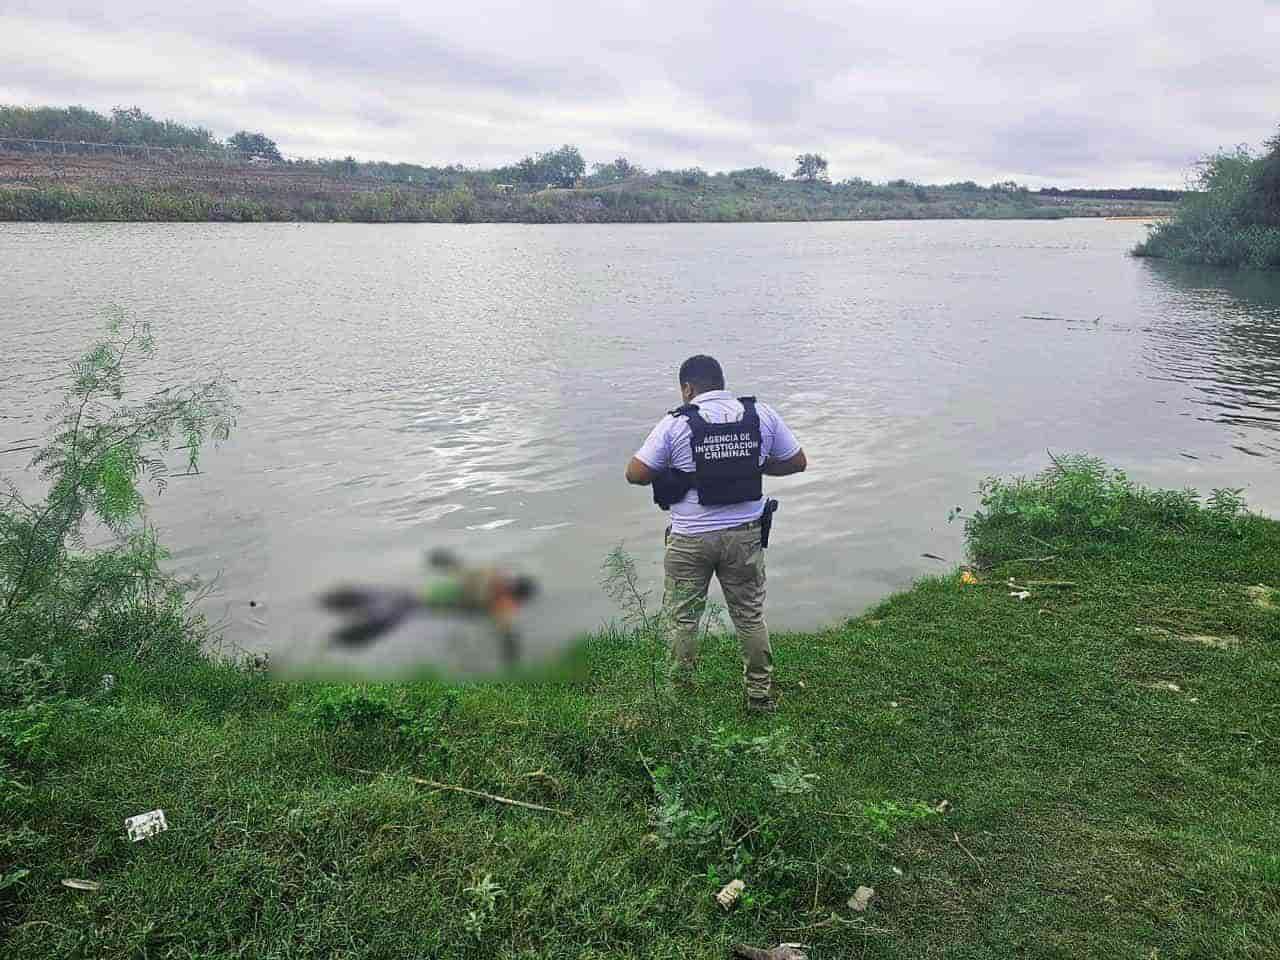 Han identificado a 2 de los últimos 5 ahogados en esta frontera